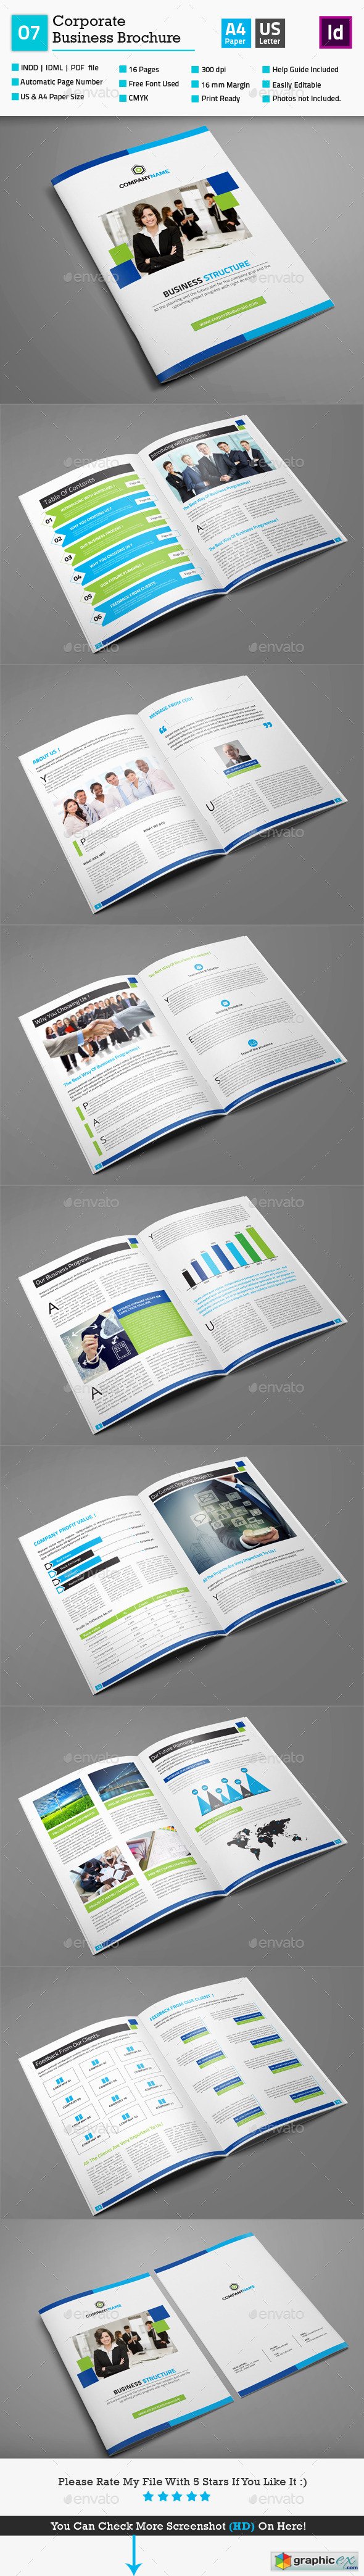 Corporate Business Brochure 07